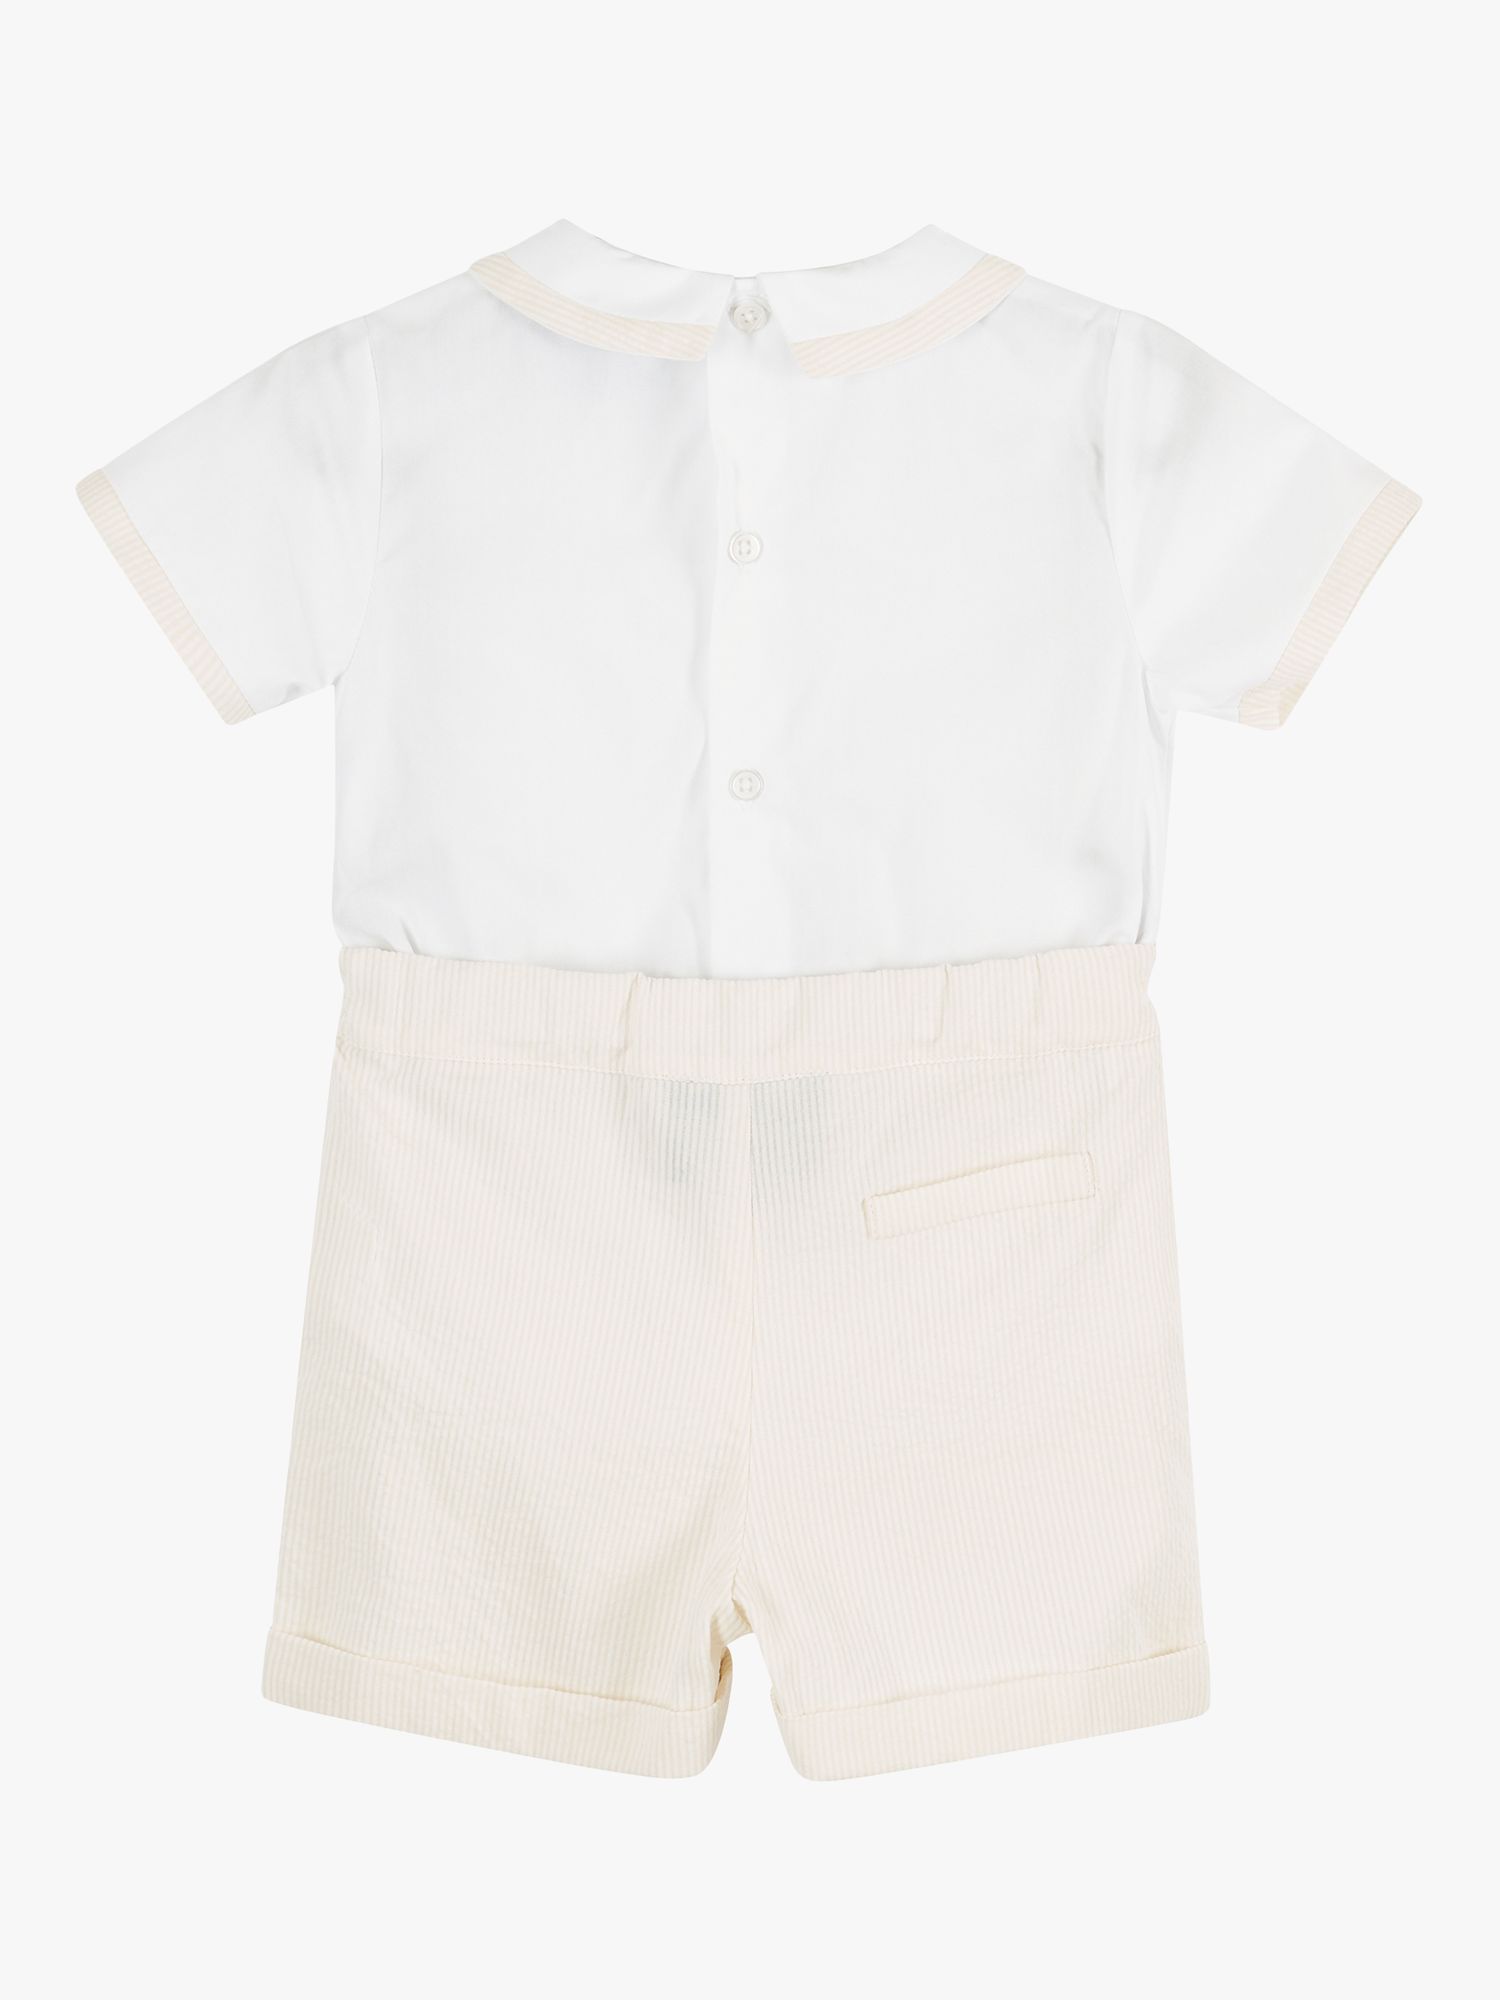 Trotters Kids' Rupert Short Sleeve Shirt & Shorts Set, Oatmeal/White, 3-6 months